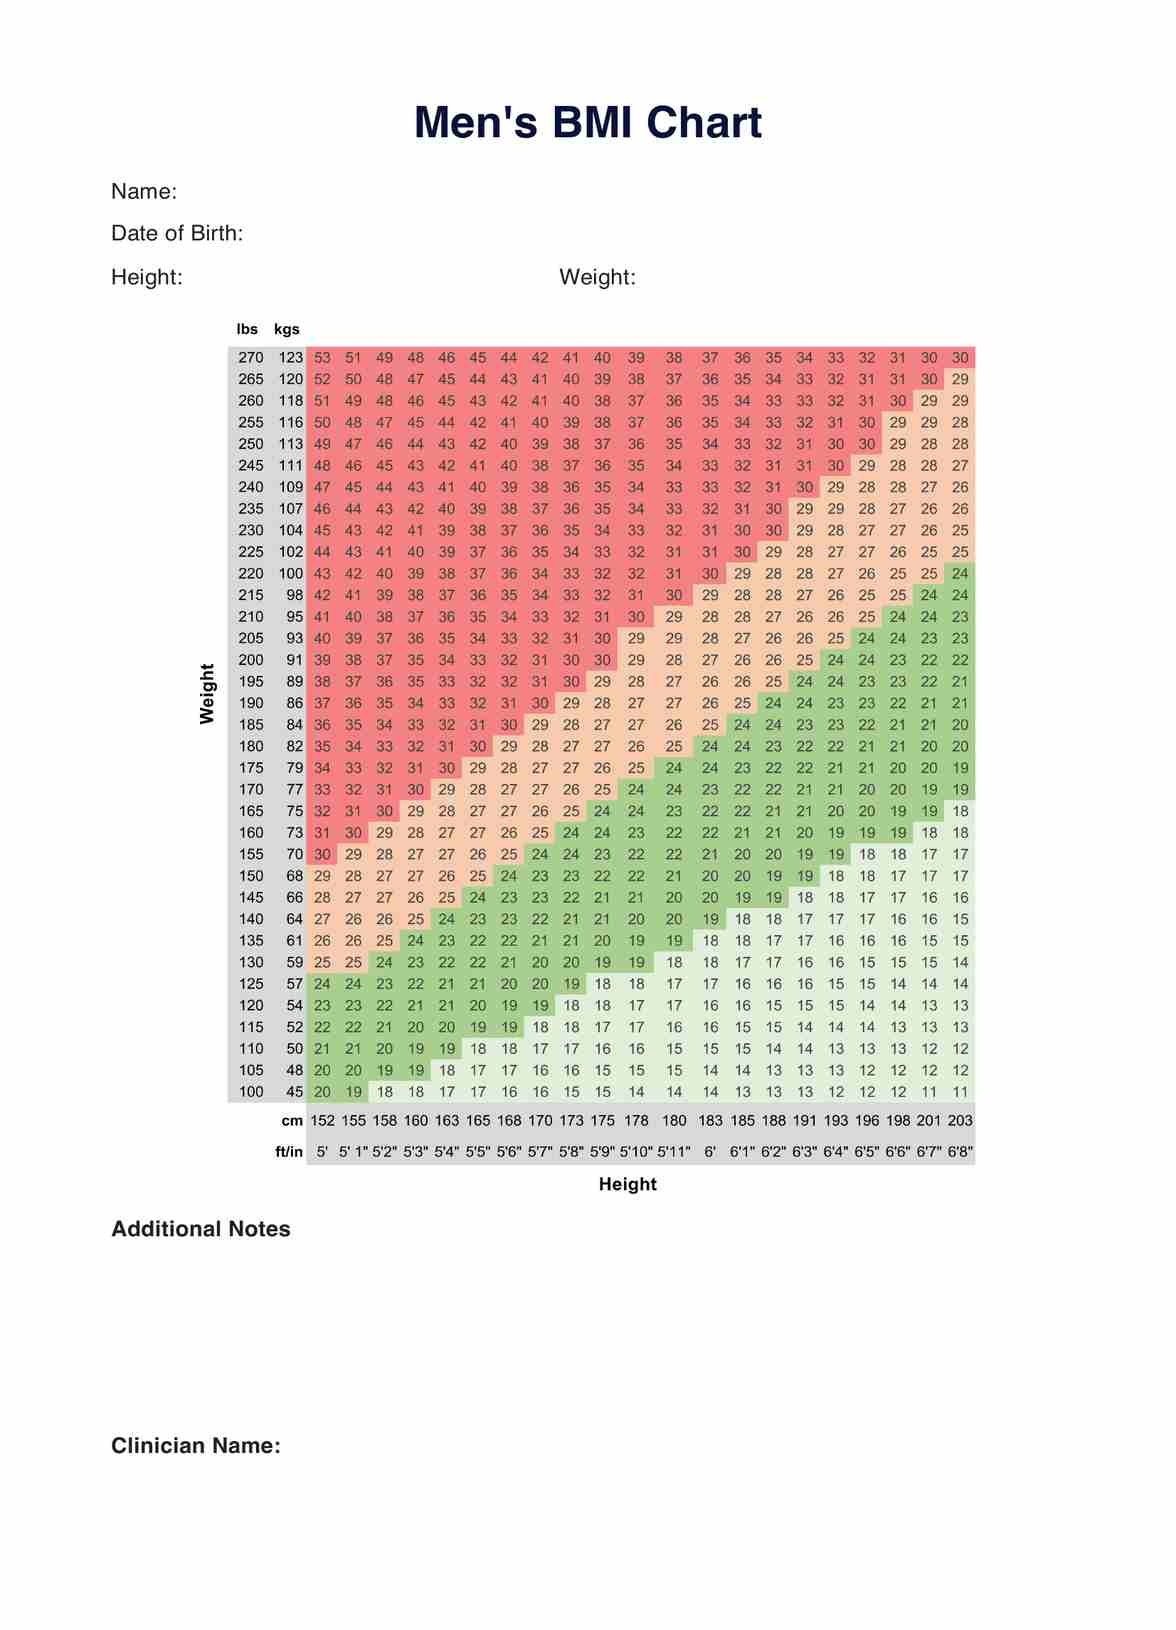 BMI Chart Men PDF Example